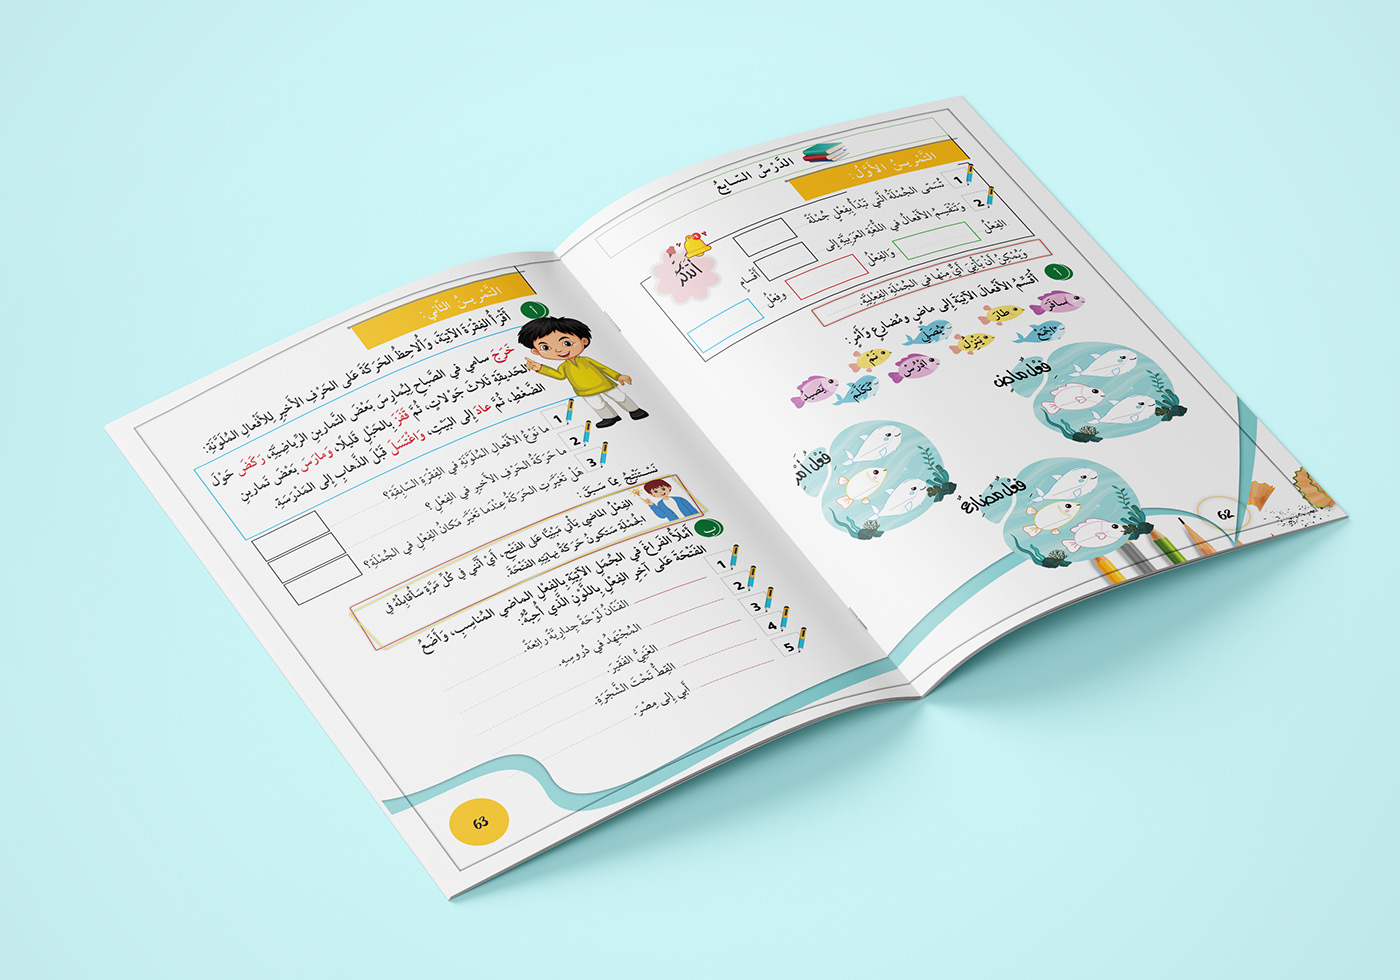 Adobe InDesign book design Books Design kids School book تصميم كتب تصميم كتب مدرسية كتب مدرسية منهاج مدرسي student bookCataloge